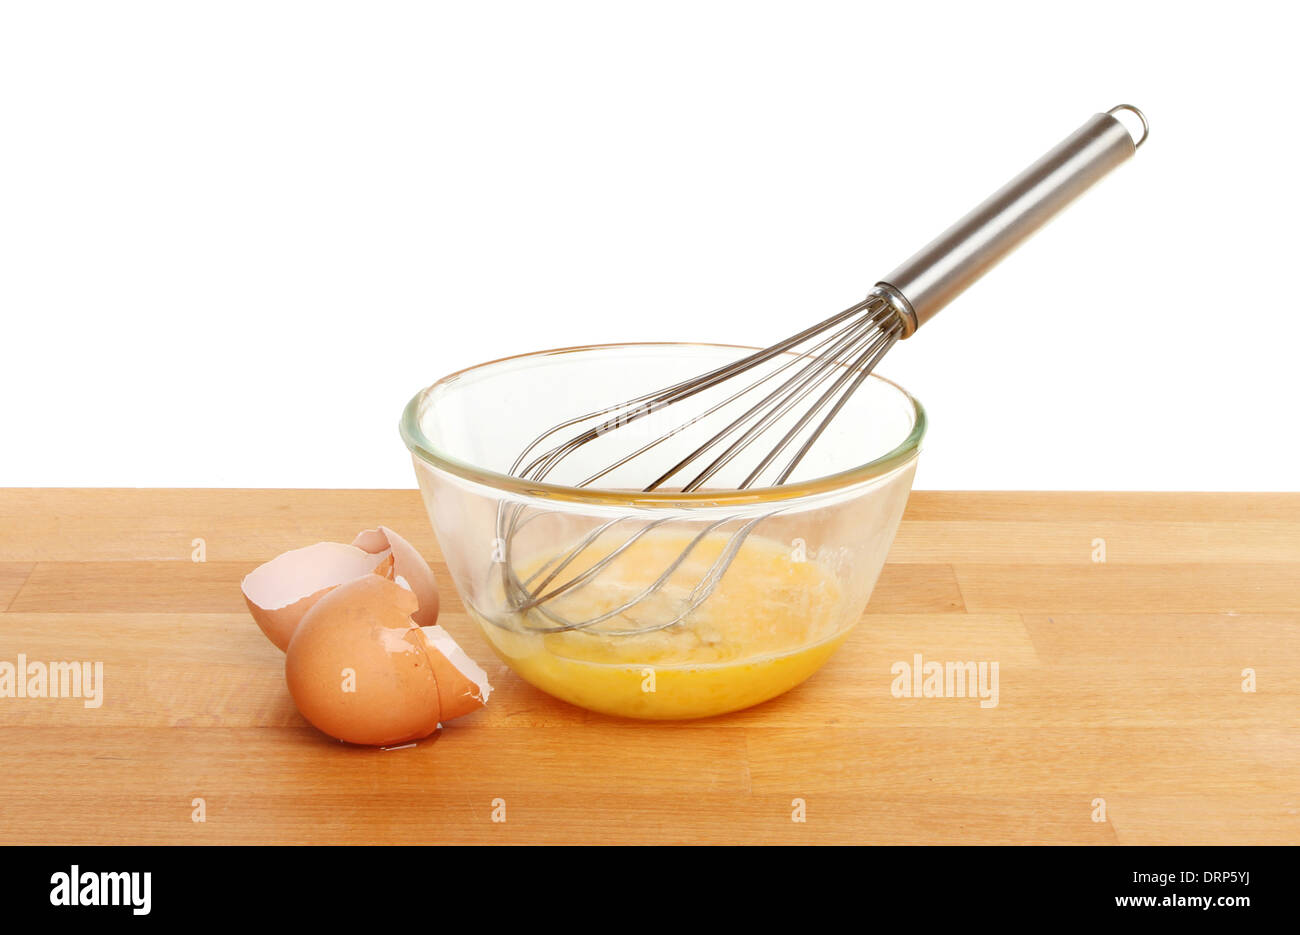 Eiern mit einem Schneebesen in einem Glas Schüssel auf einer Küchenarbeitsplatte vor einem weißen Hintergrund geknackt Stockfoto